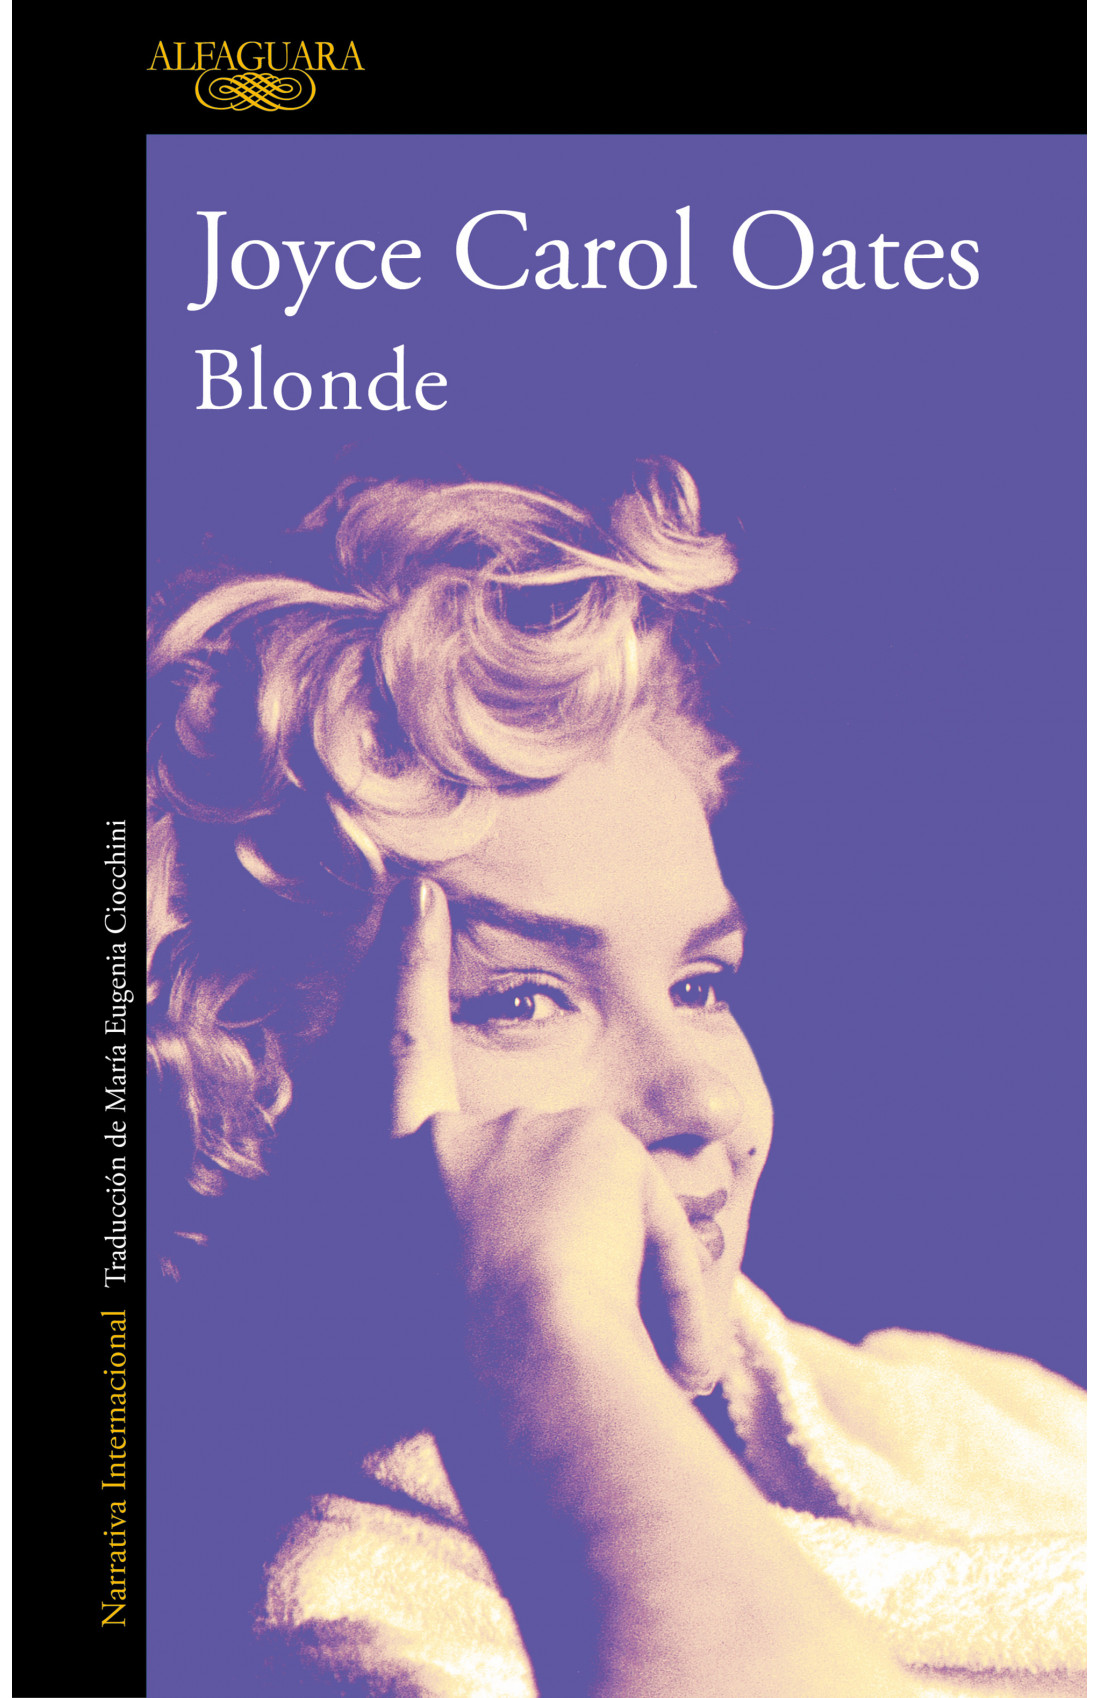 'Blonde', Joyce Carol Oates